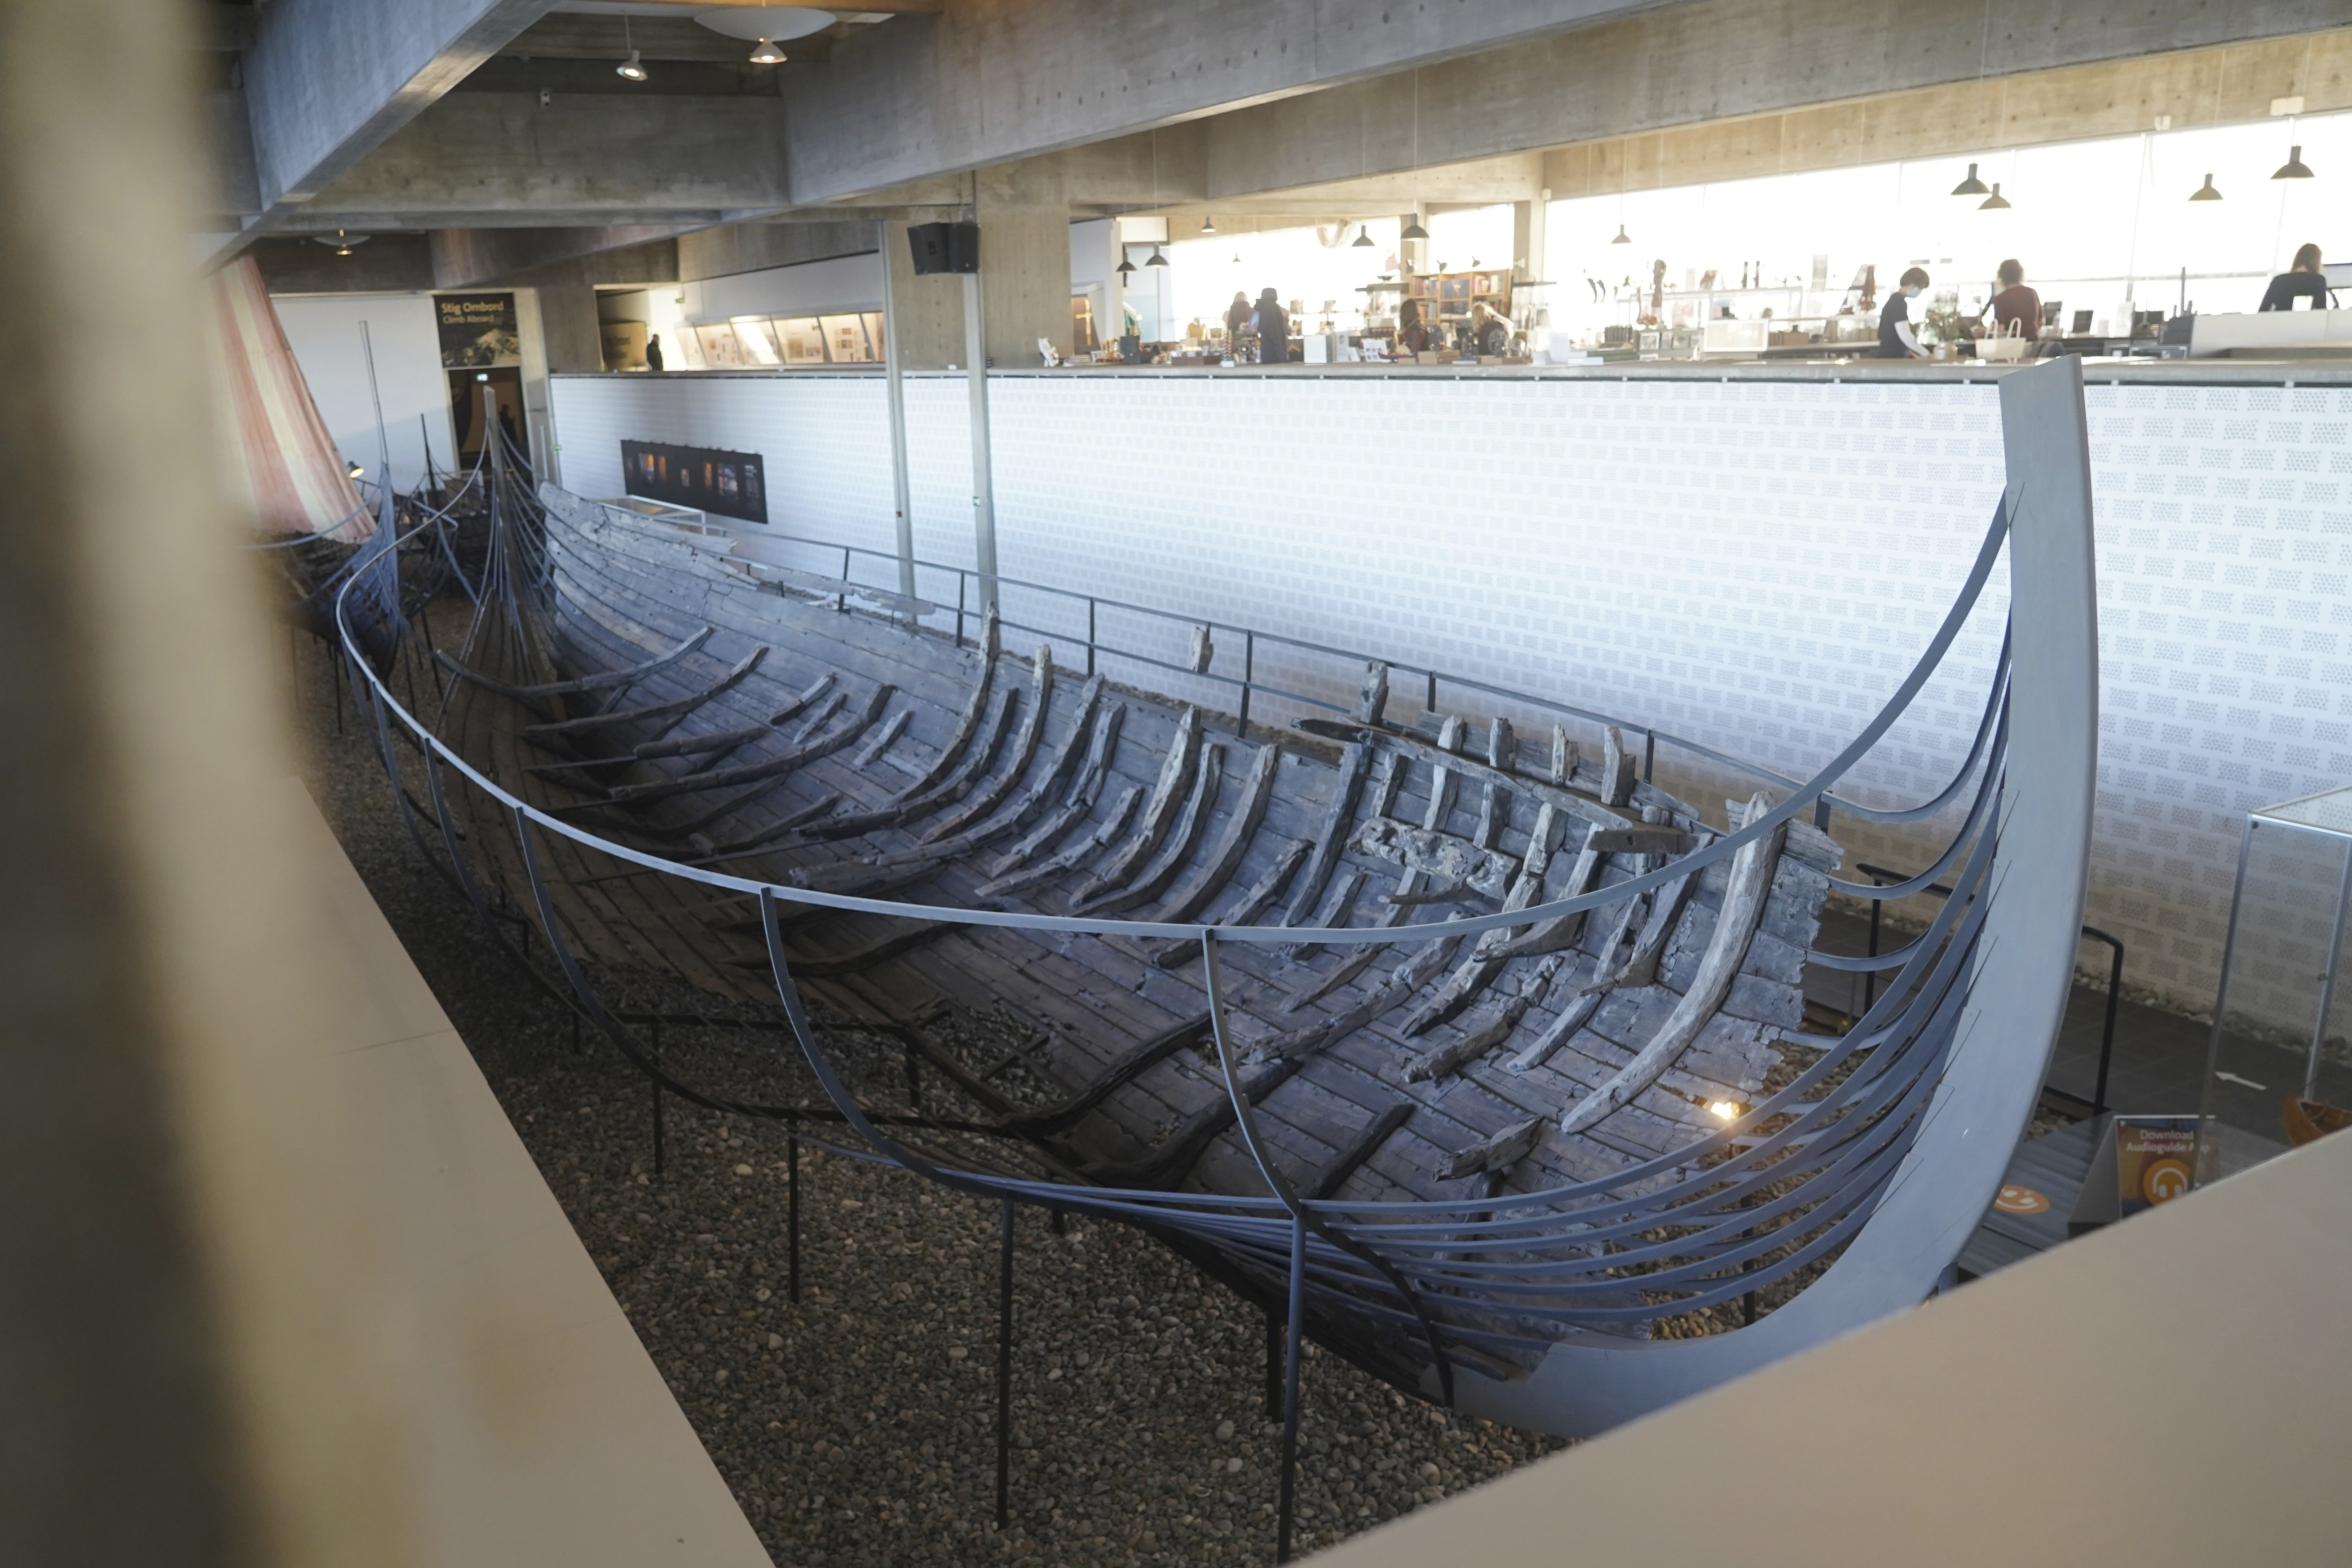 Un buque mercante vikingo de 15 metros de eslora del siglo XI, construido según la tradición nórdica de los barcos de escoria, se encuentra en exhibición en el Museo de Barcos Vikingos. Roskilde, Dinamarca, lunes 17 de enero de 2022. (Foto AP/James Brooks)

